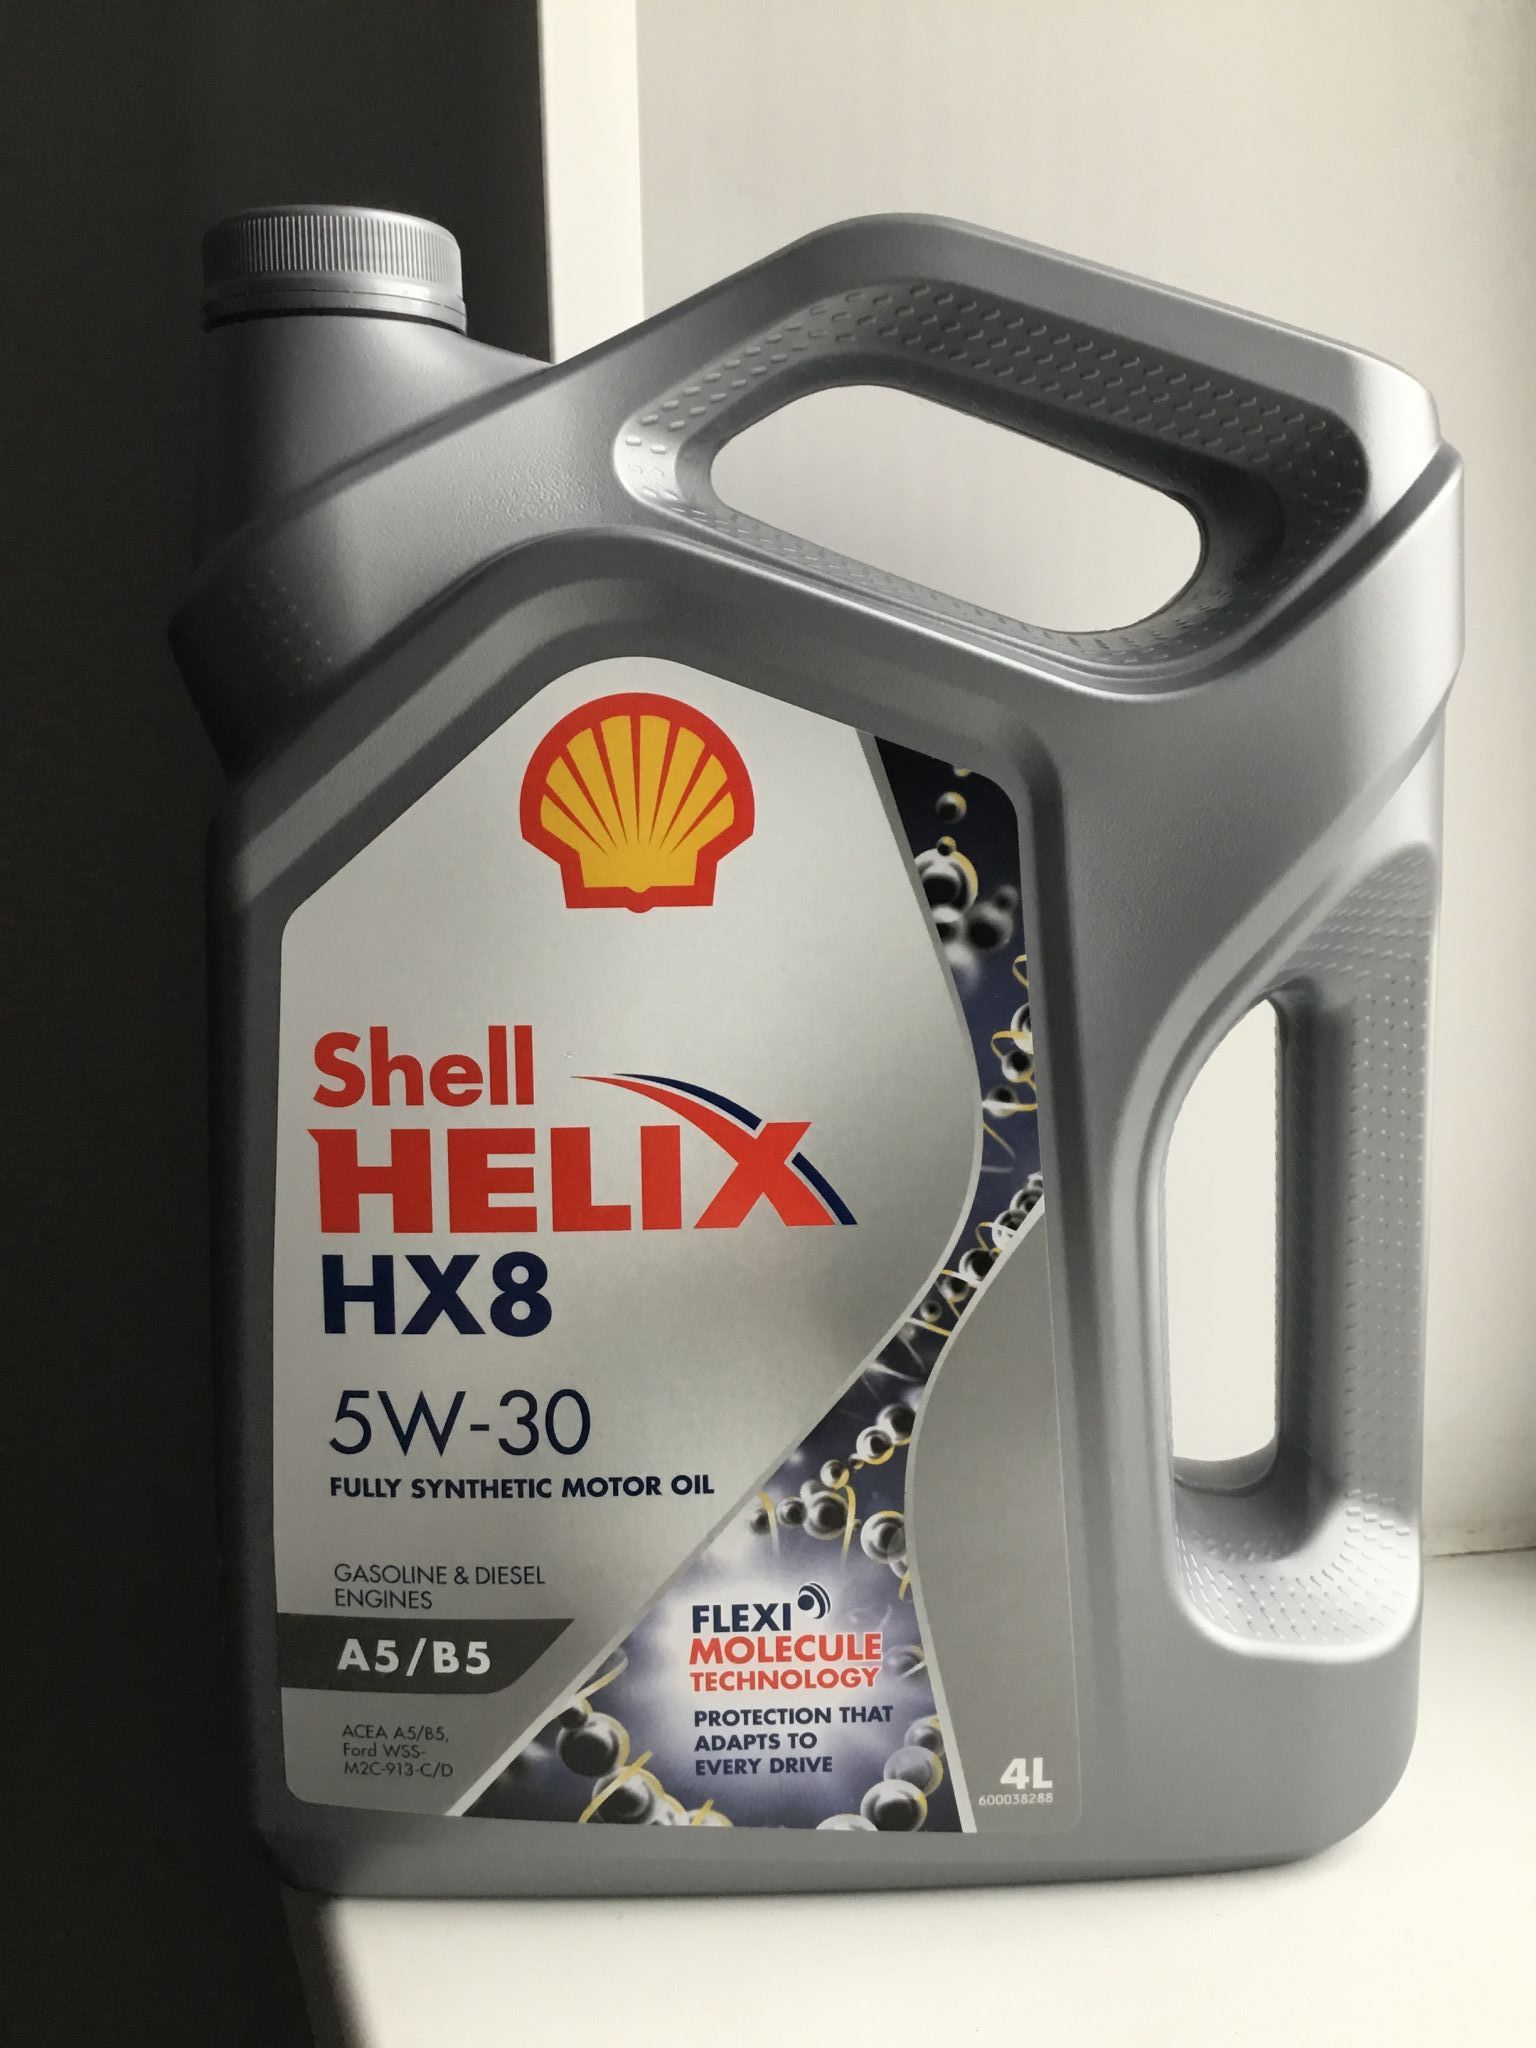 Купить масло а5 в5. Shell моторное 5w30 hx8. Shell Helix hx8 5w30 a5/b5. Shell 5w30 a5/b5. Hx8 5w30 a5/b5.